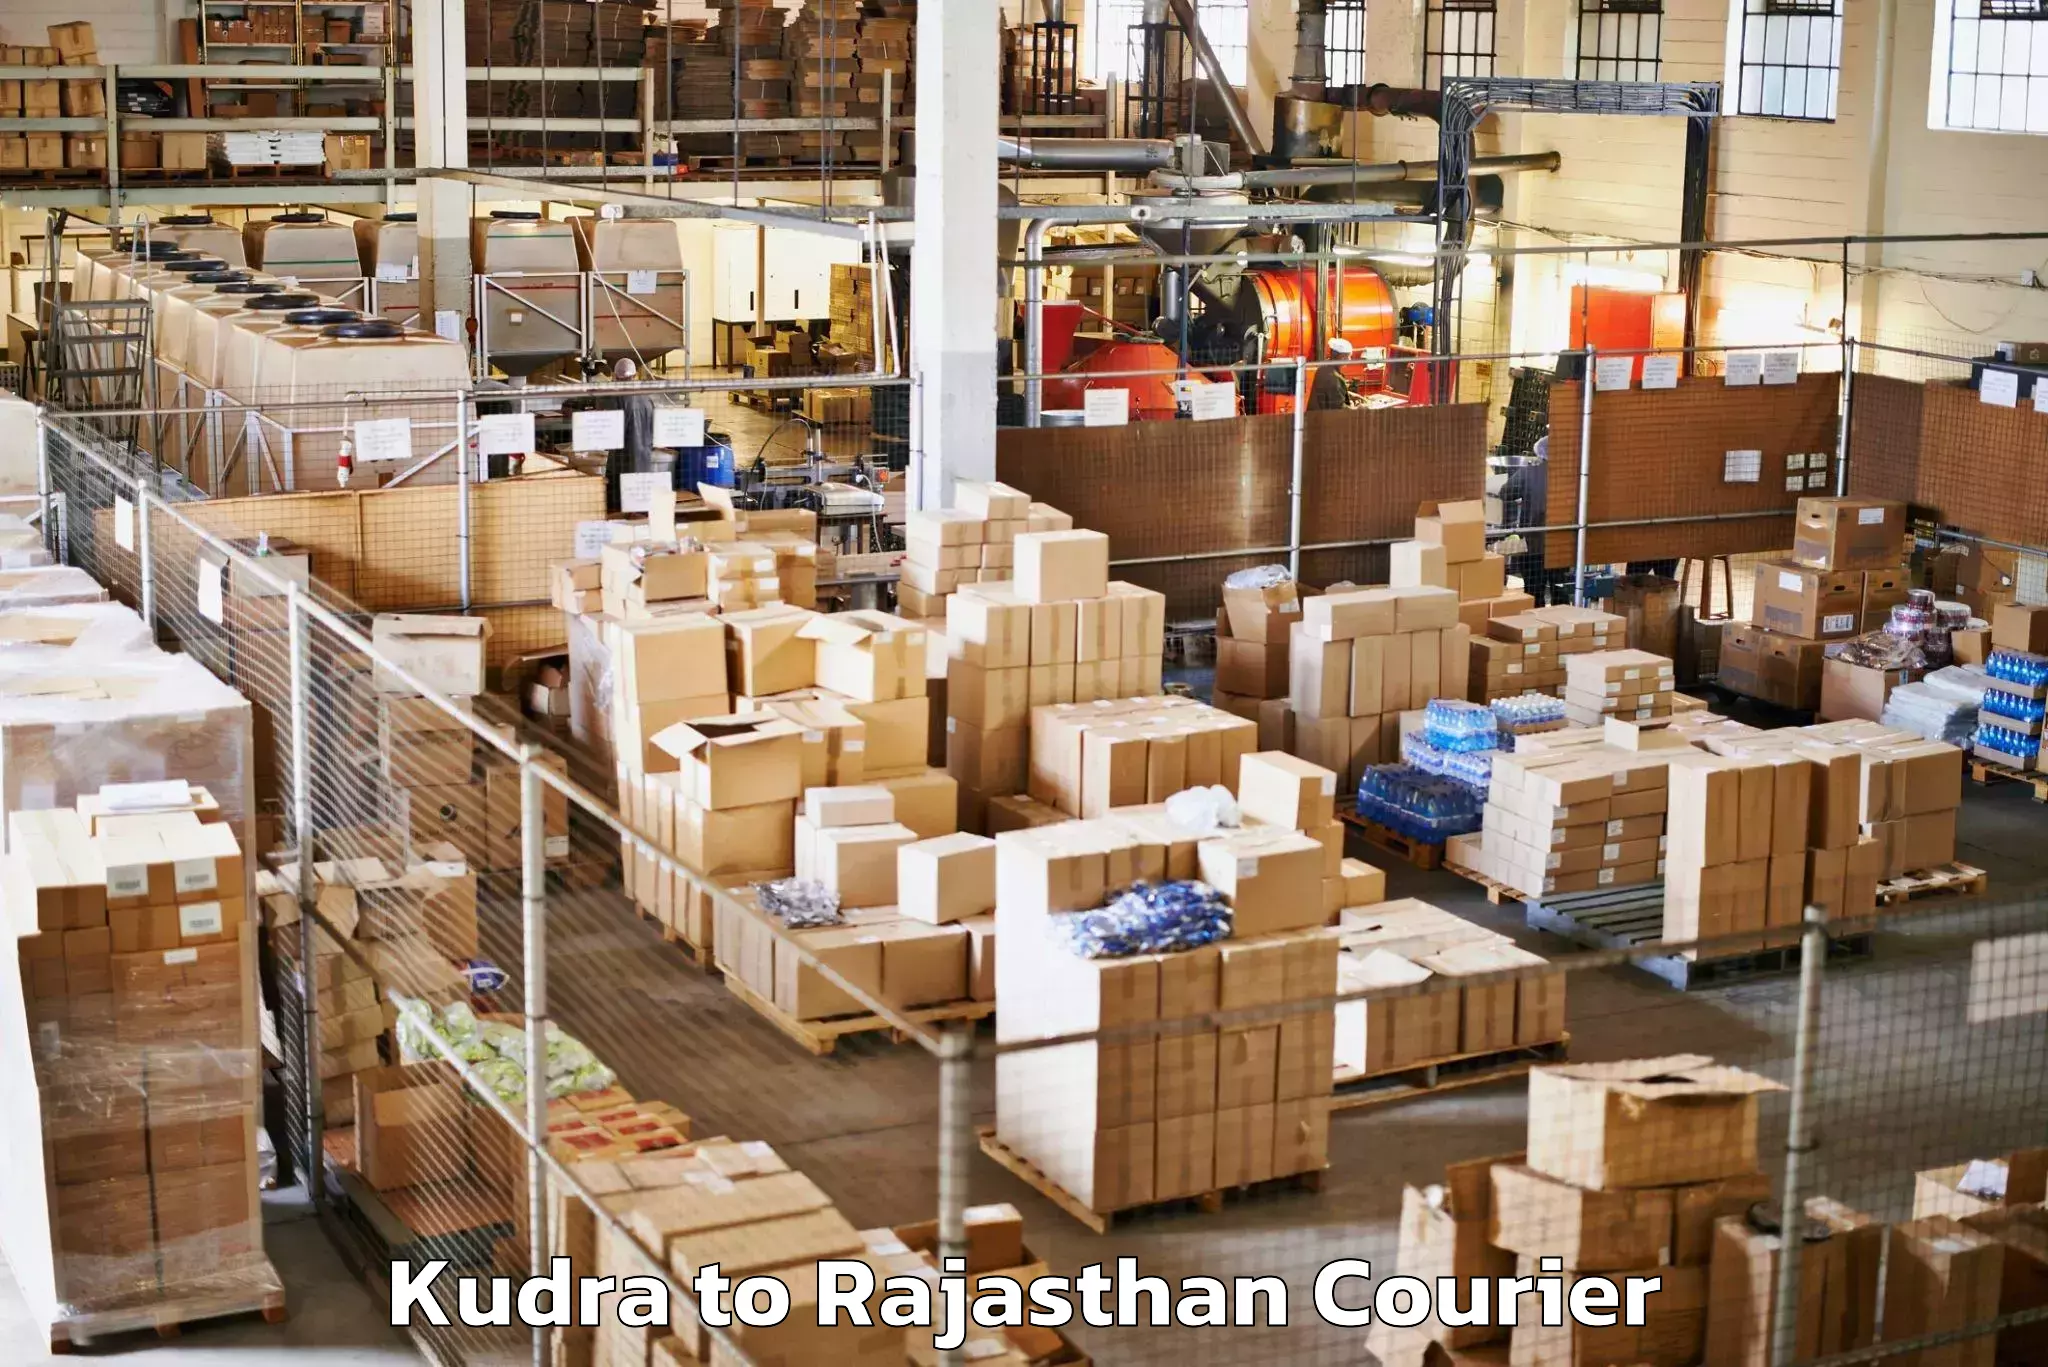 Baggage shipping calculator Kudra to Banswara